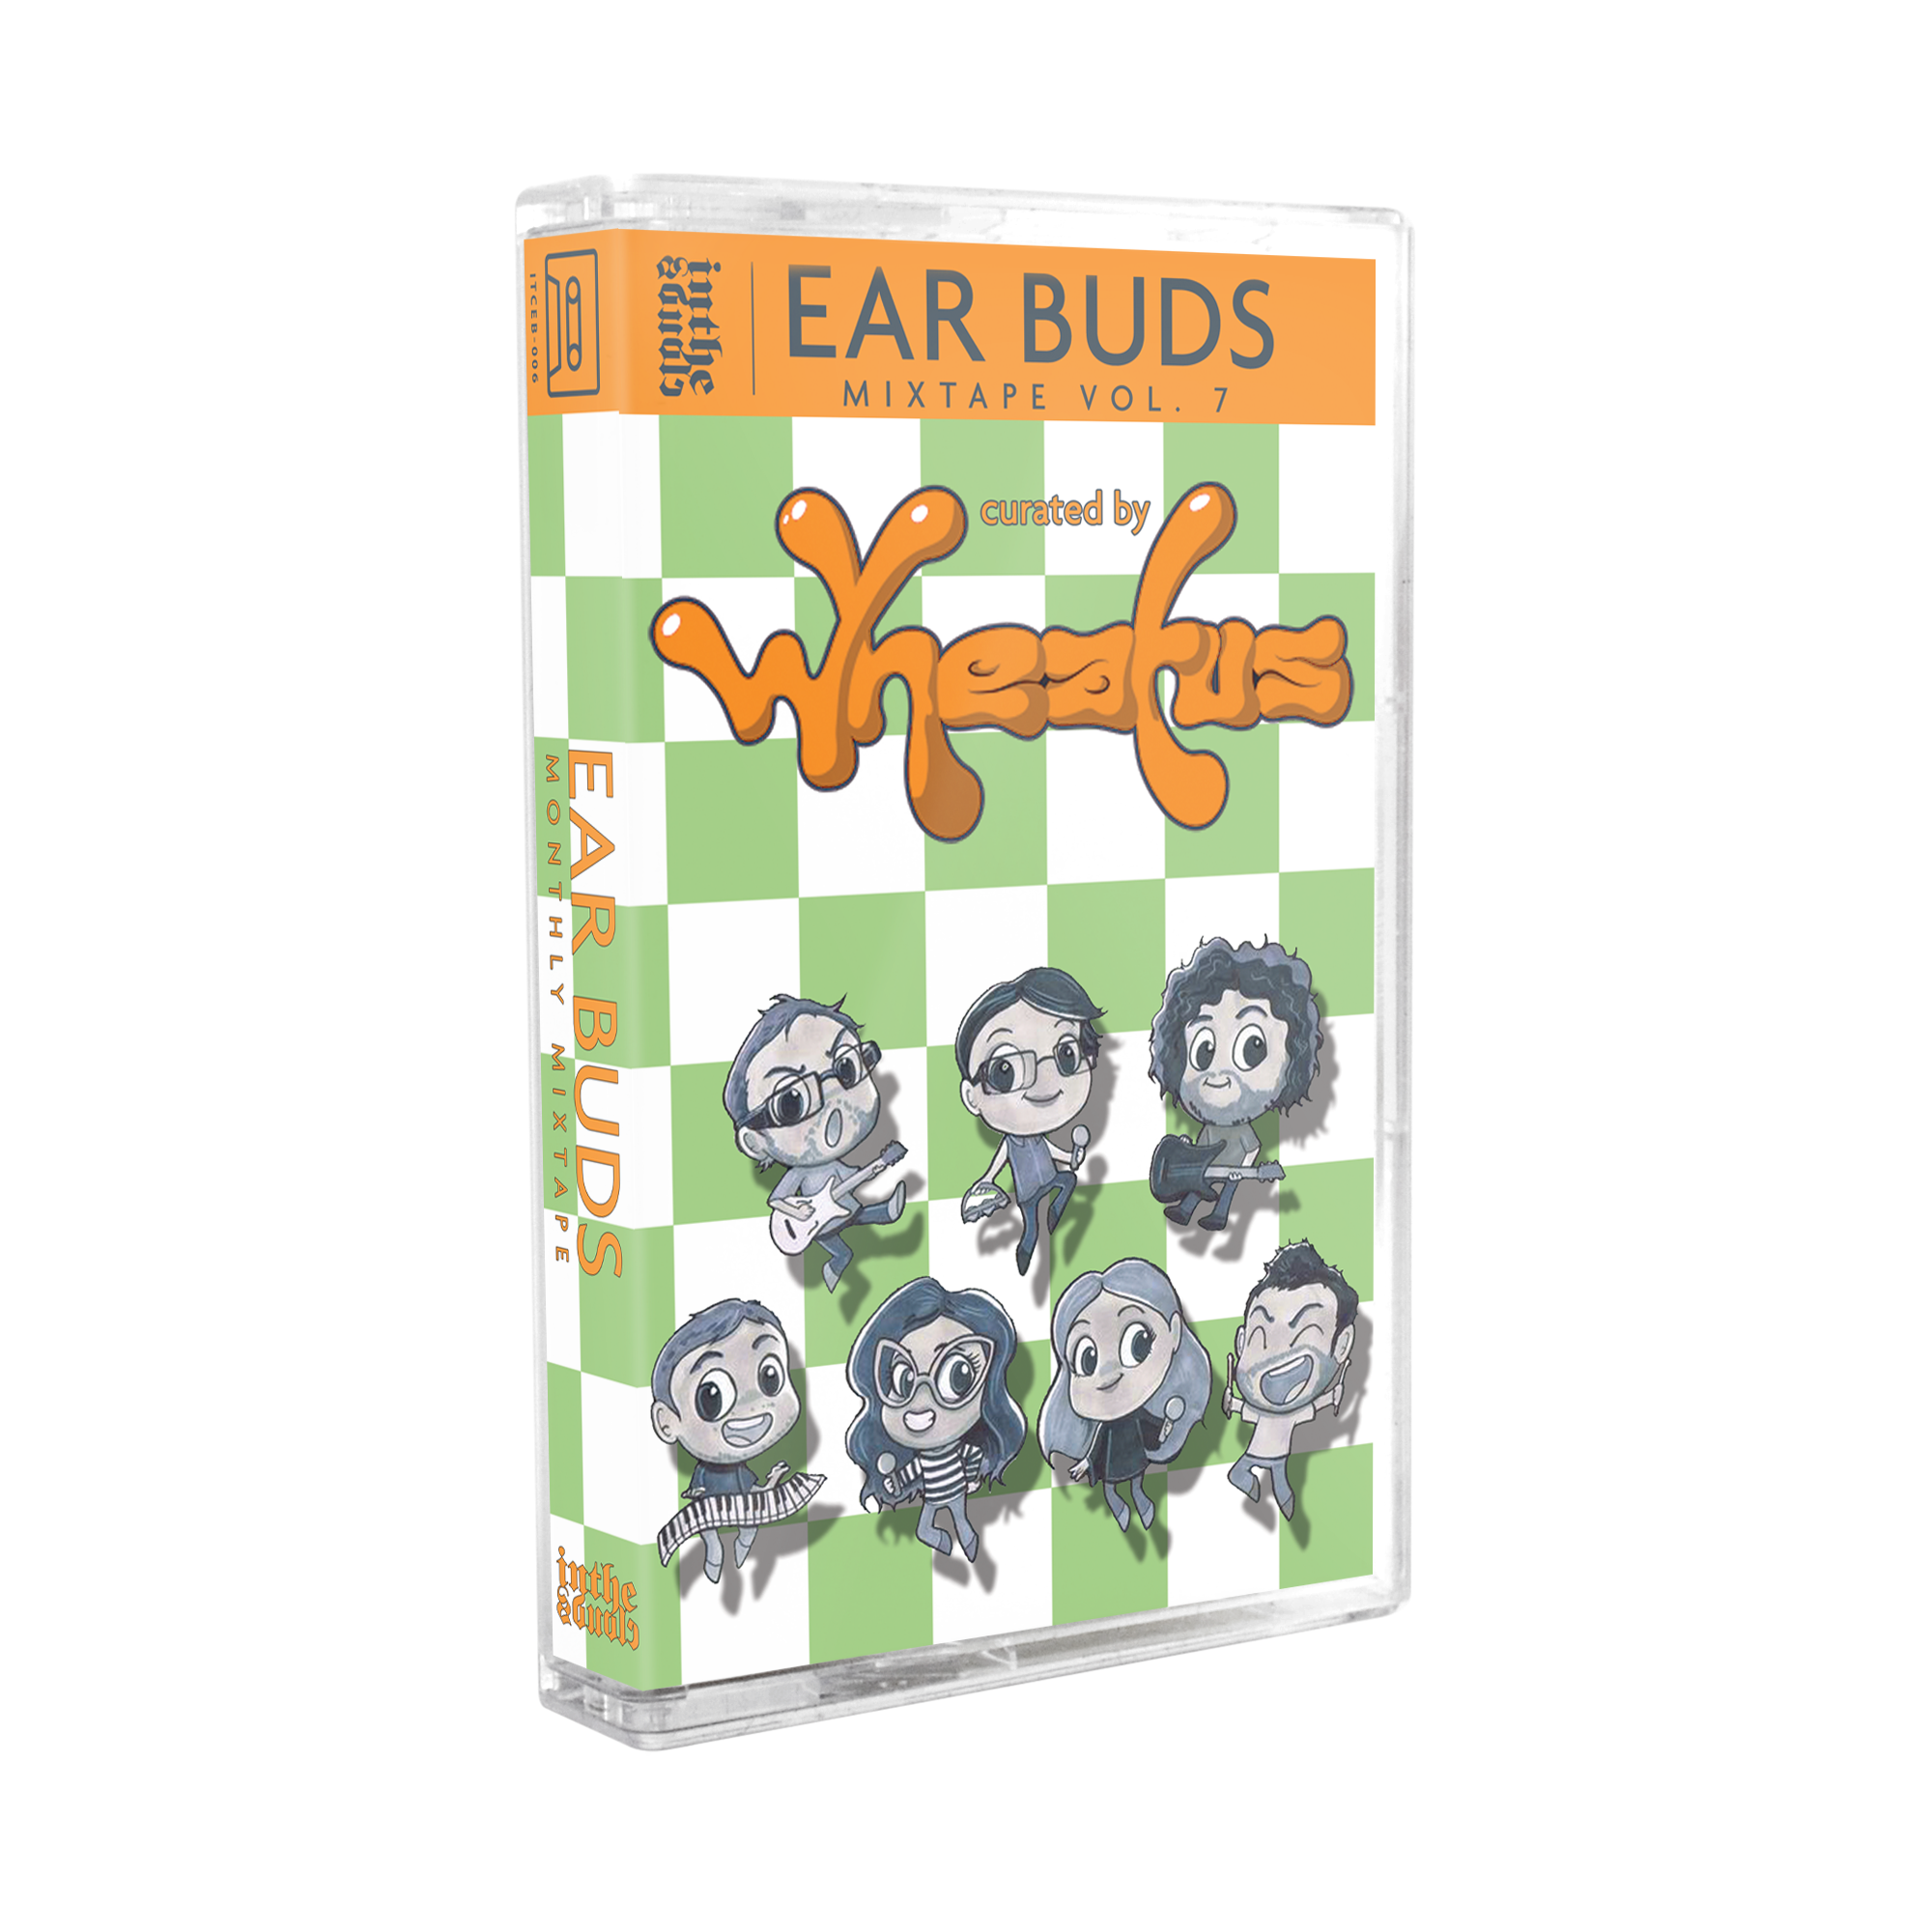 Ear Buds Mixtape Vol. 7